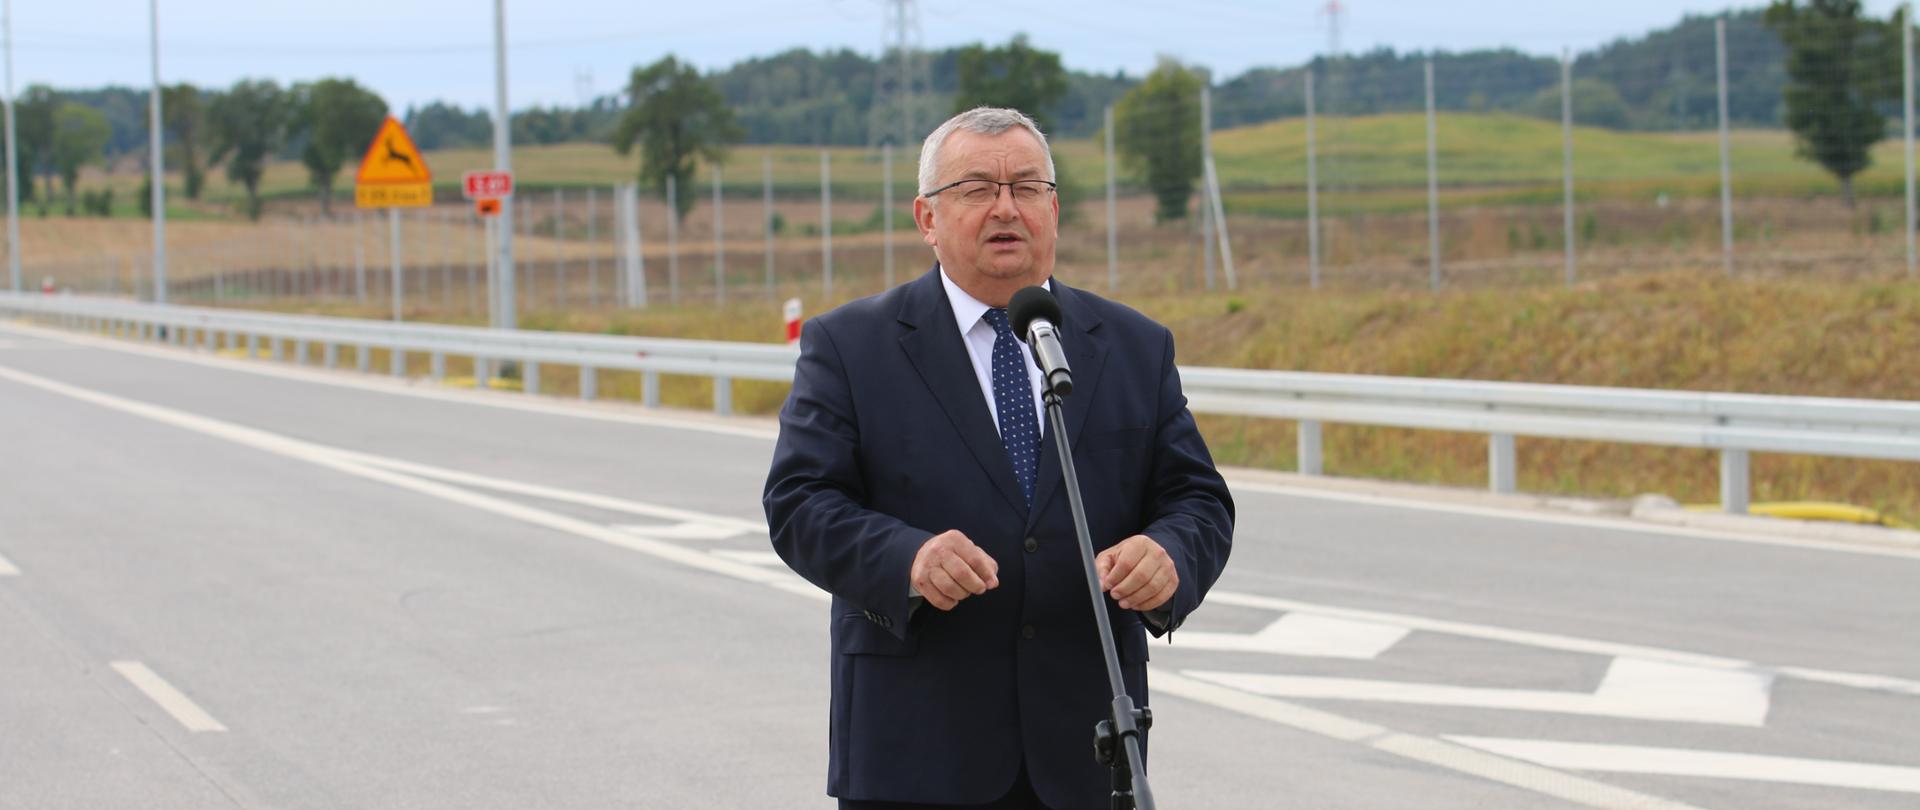 Minister infrastruktury Andrzej Adamczyk w trakcie konferencji prasowej na węźle Ełk Południe na drodze ekspresowej S61 (szlak Via Baltica)